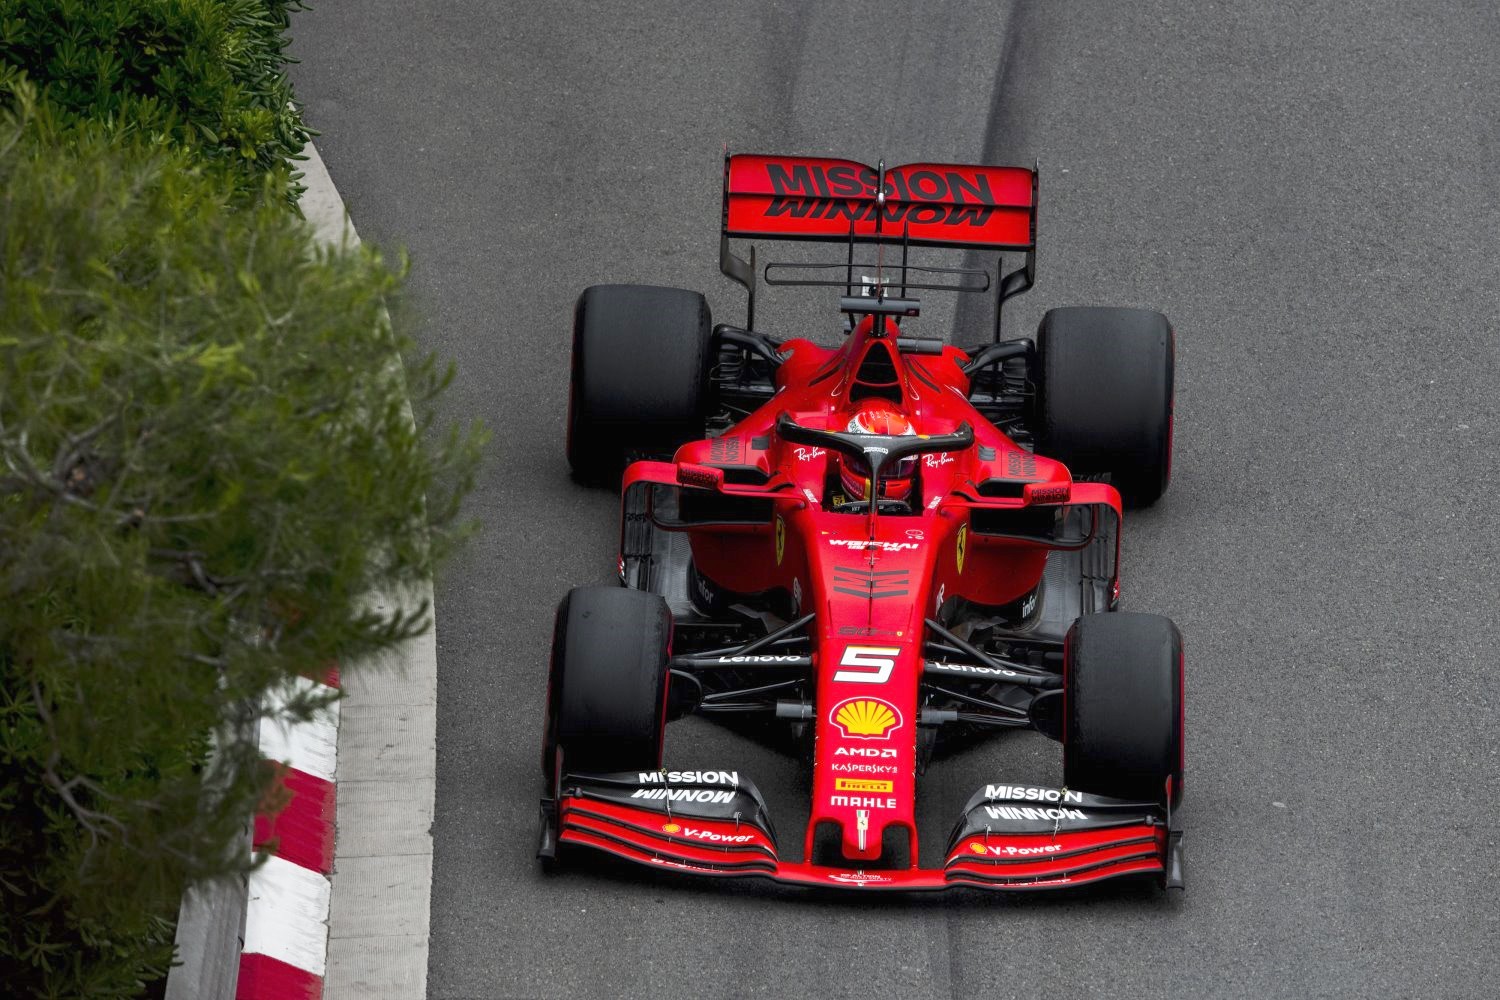 So far, Ferrari will be first to unveil their new car